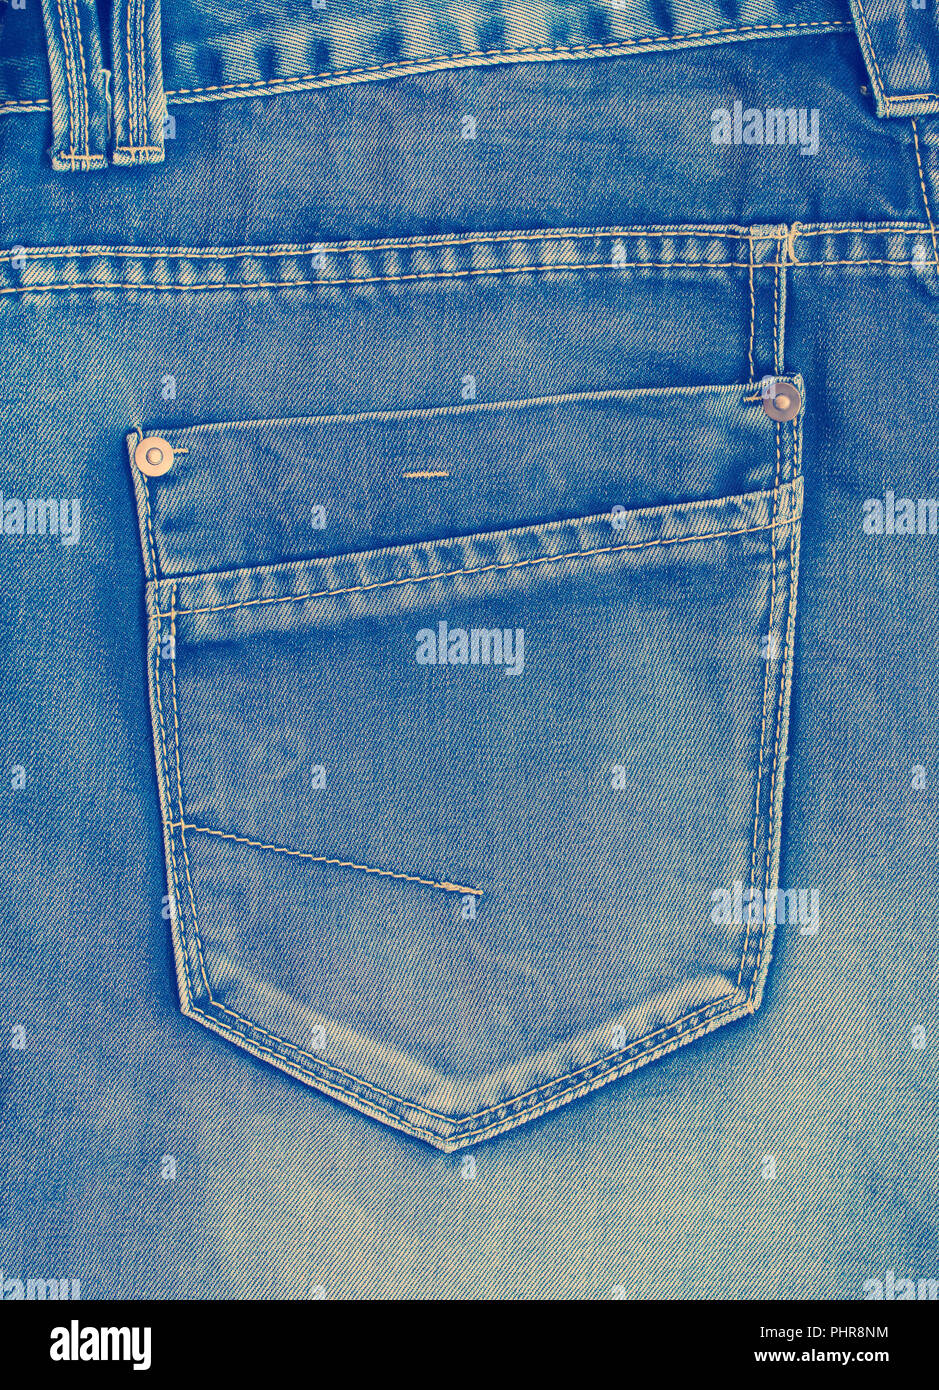 Blue jeans pocket Stock Photo - Alamy